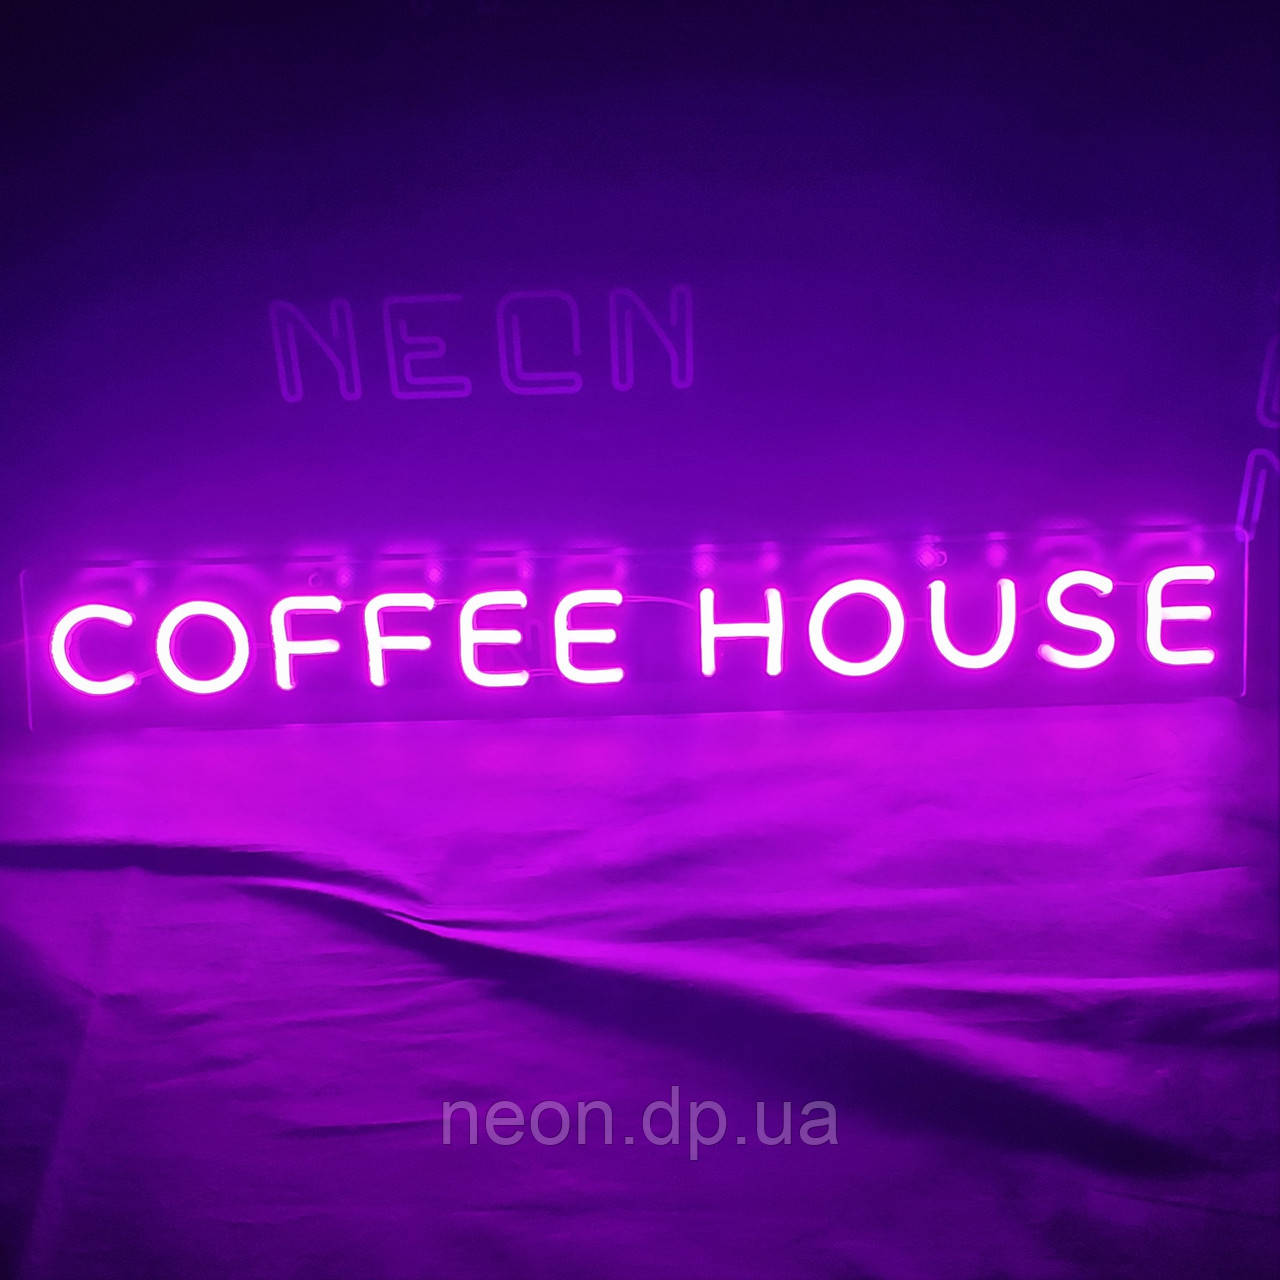 Неонова вивіска "coffee house"